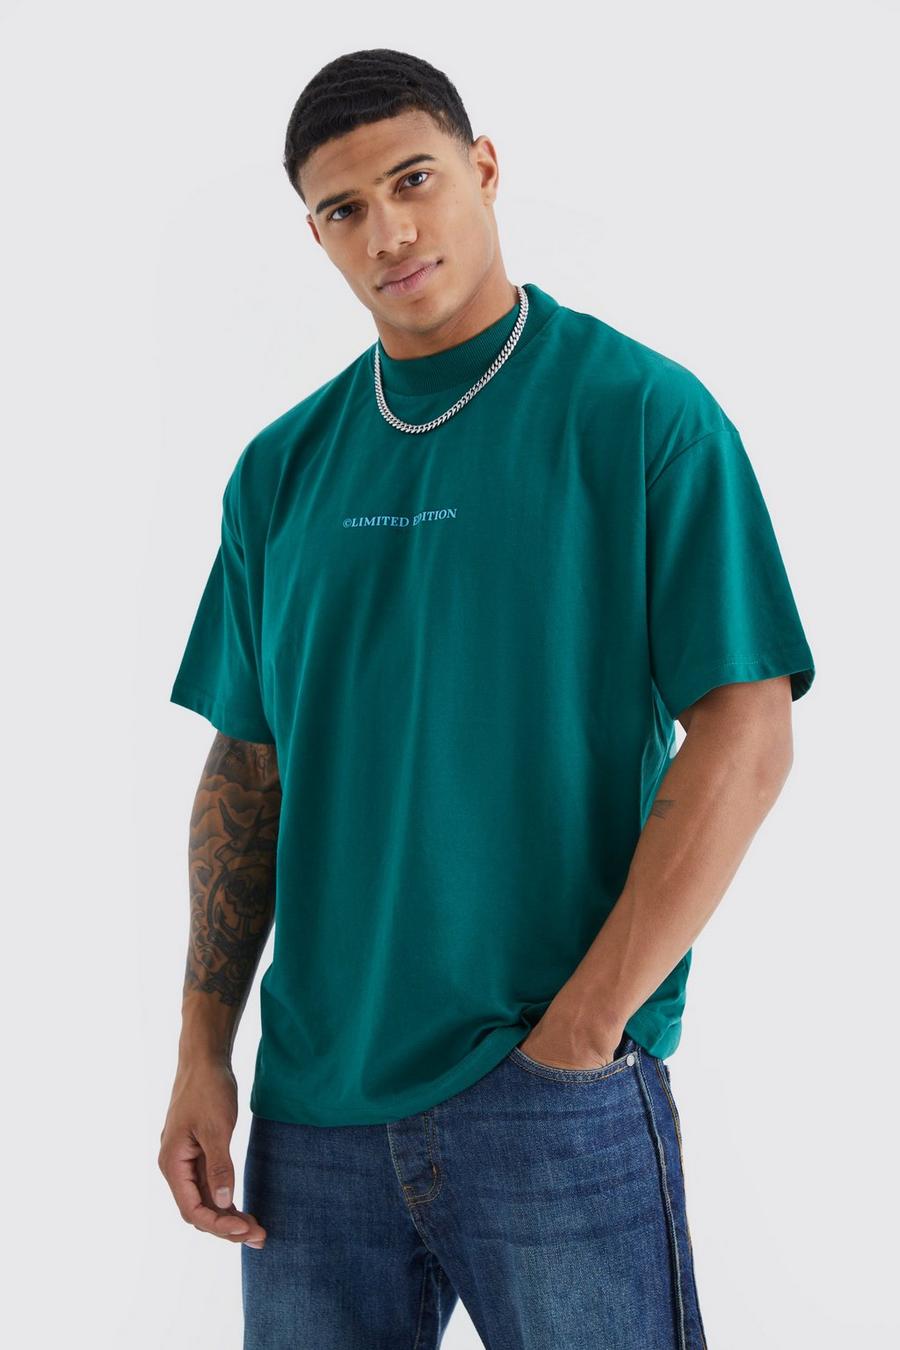 T-shirt oversize épais - Limited Edition, Forest